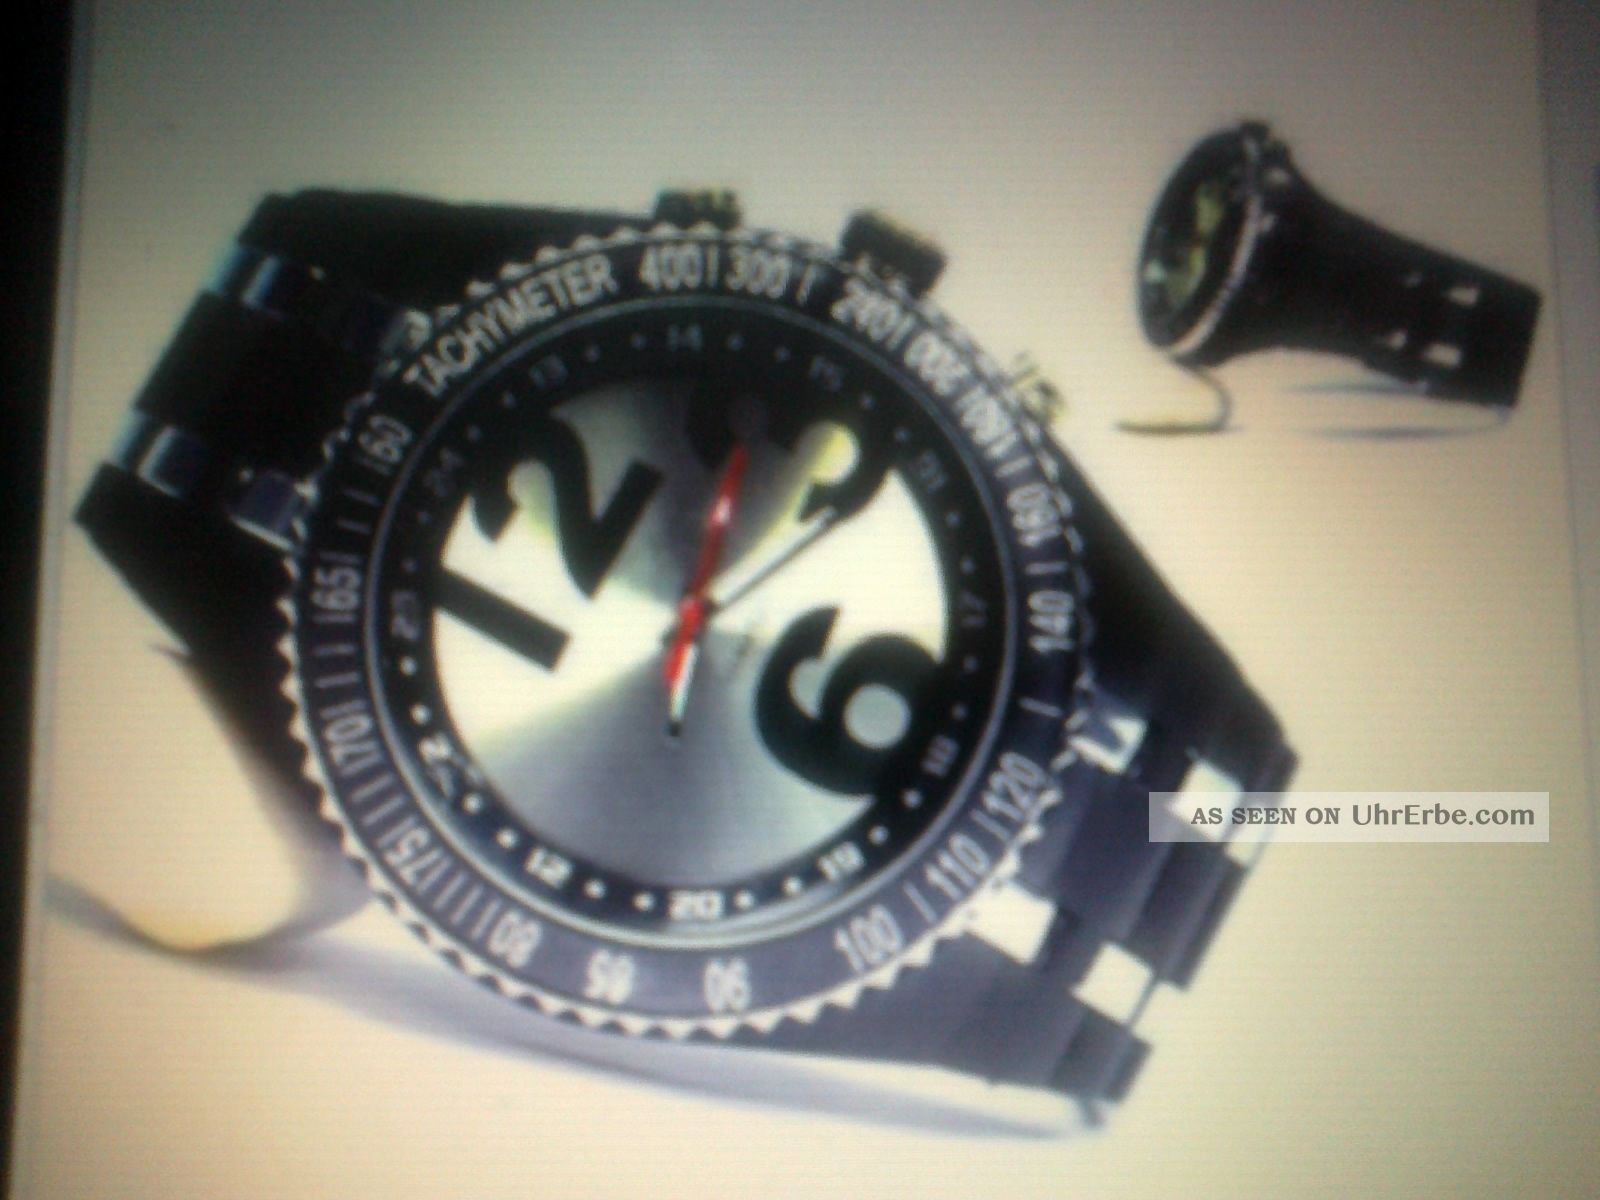 Herrenarmbanduhr Silber/schwarz Xxl Flieger Design Retro Fashion Look Armbanduhren Bild